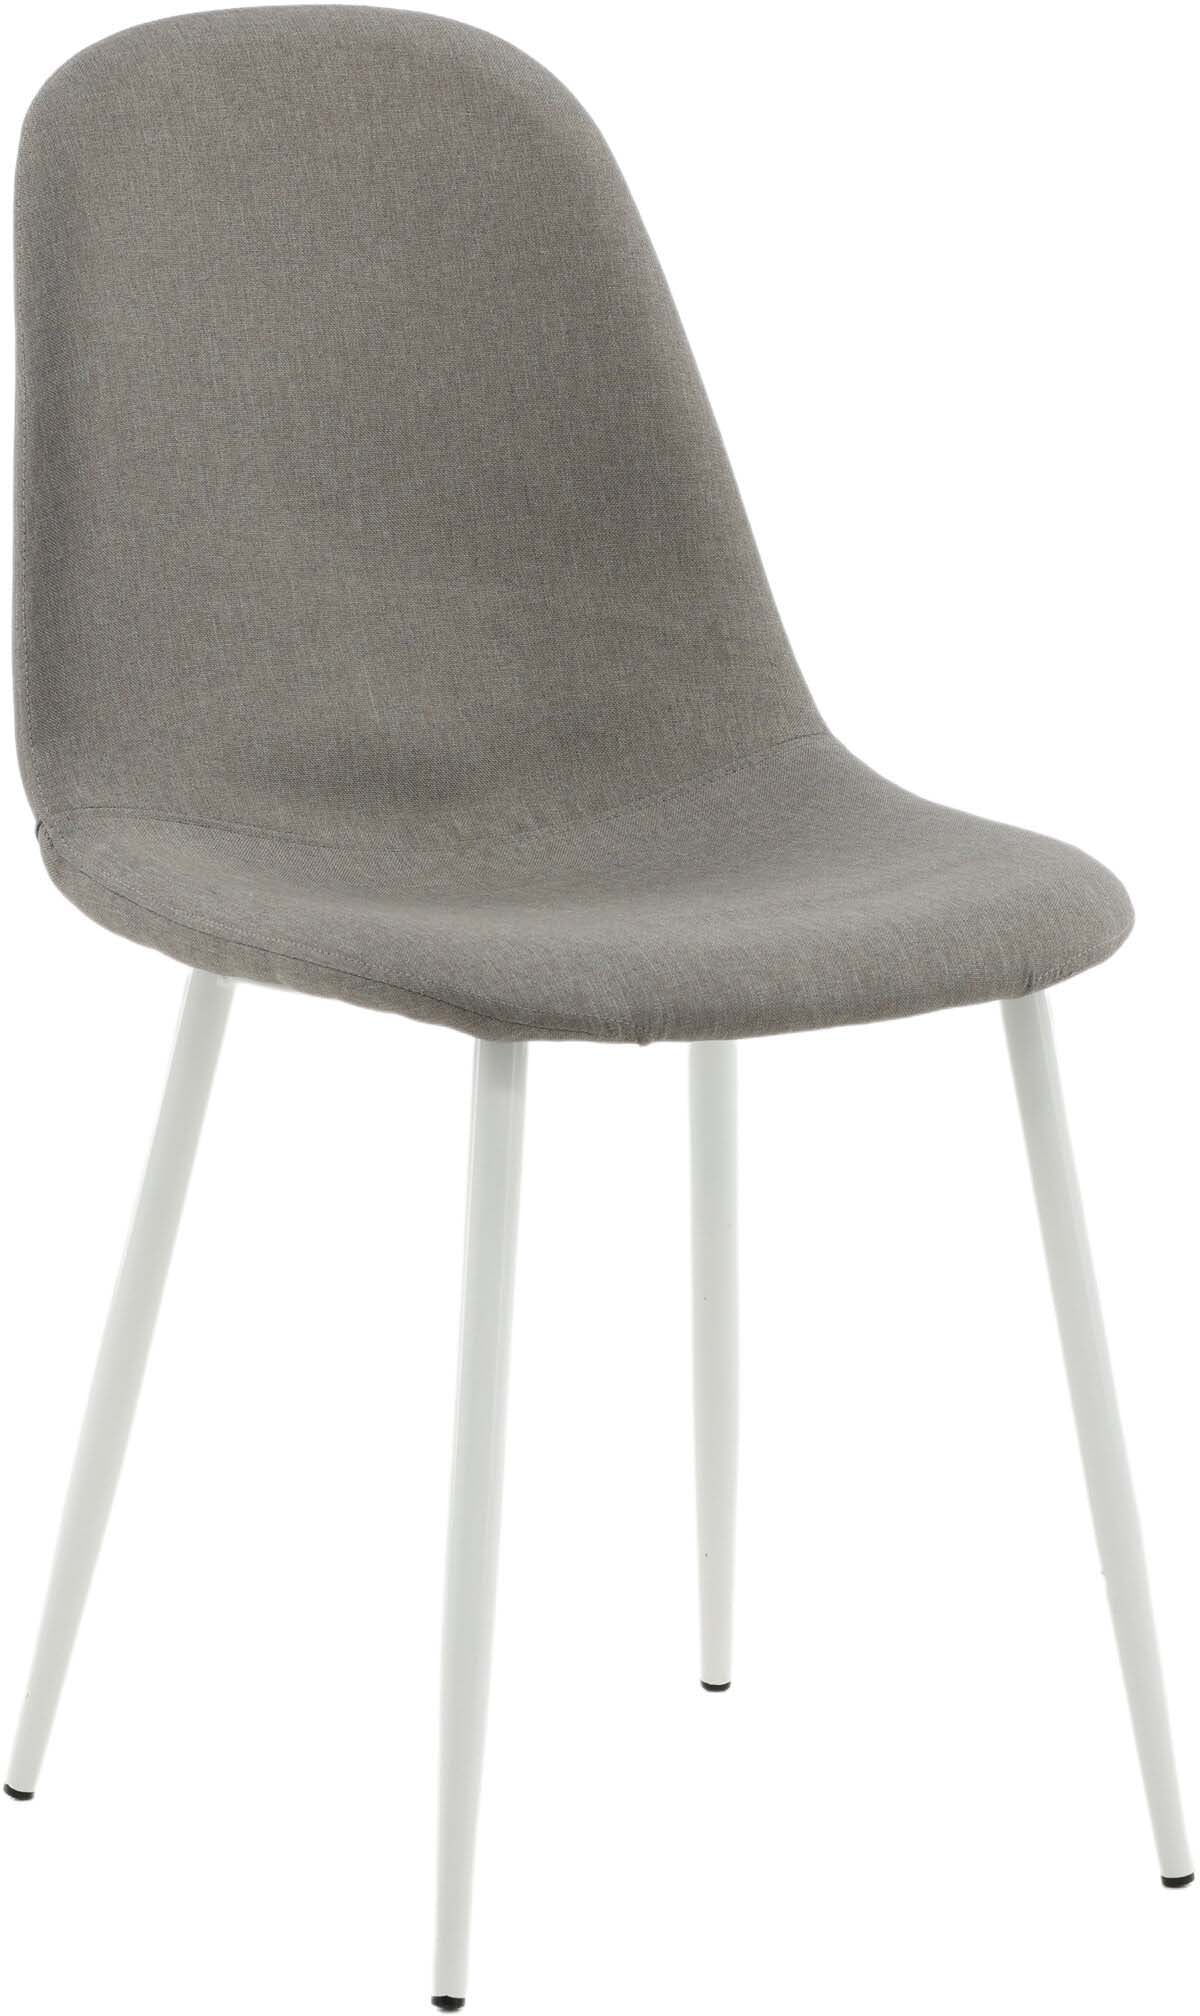 Polar Stuhl in Grau präsentiert im Onlineshop von KAQTU Design AG. Stuhl ist von Venture Home